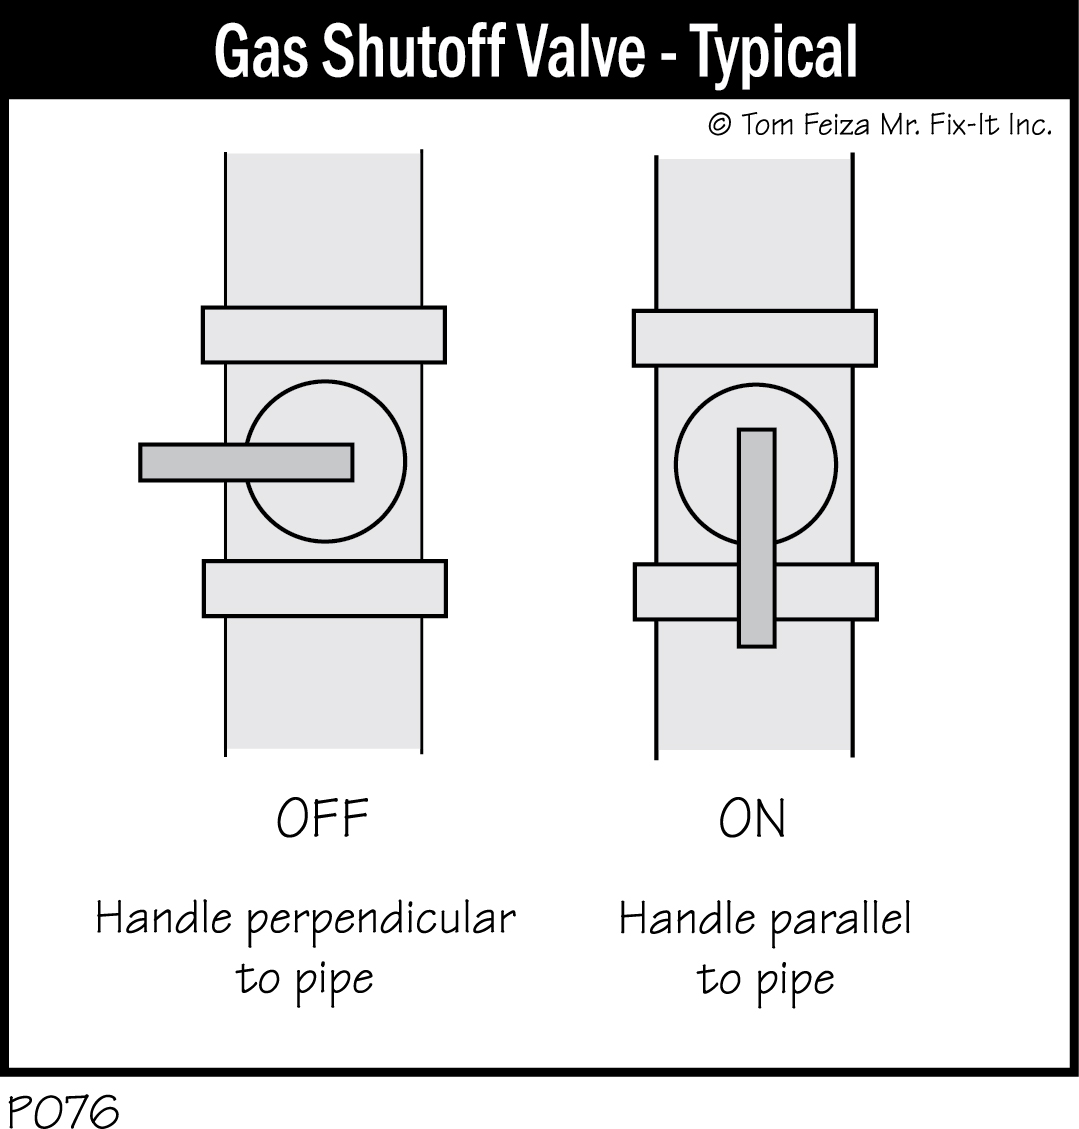 P076 - Gas Shutoff Valve - Typical